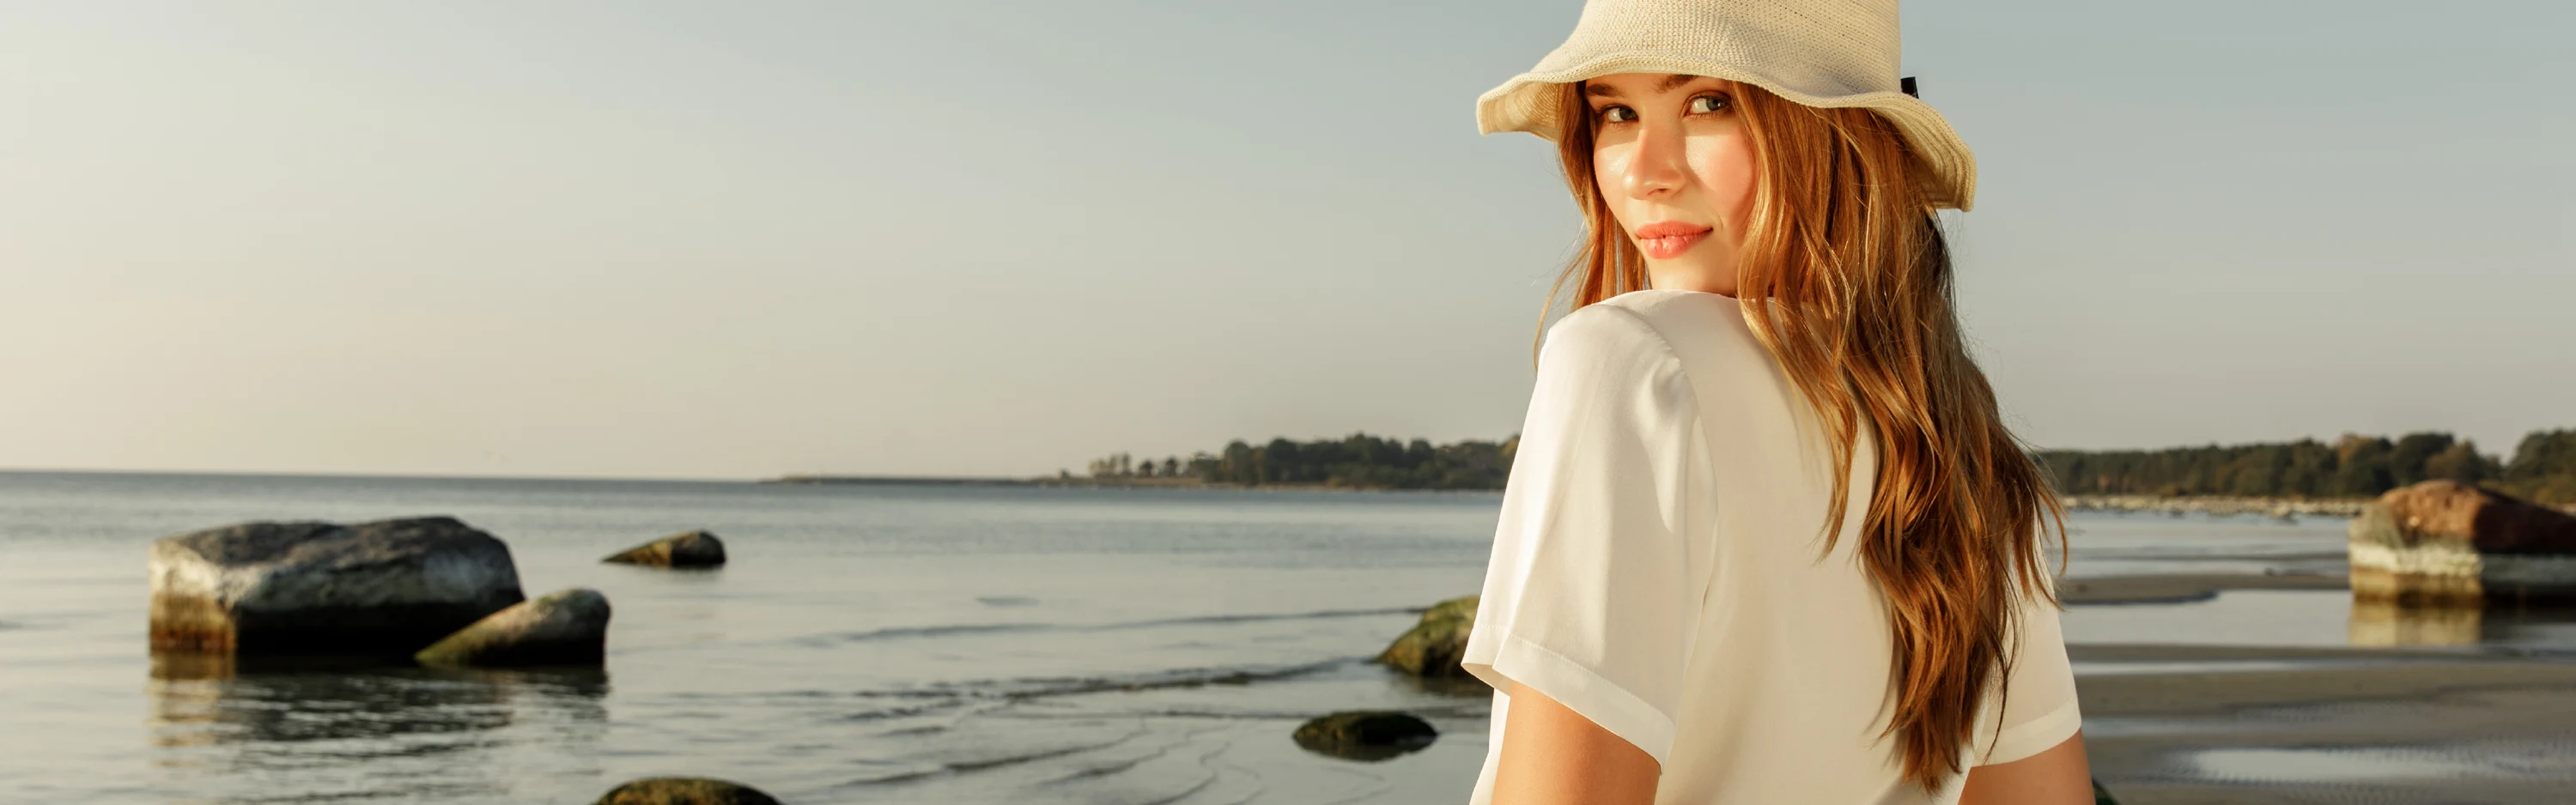 Lierihattuun pukeutunut nainen seisoo rannalla. Aurinko laskeutuu ja muuttaa kesäisen maiseman hieman utuiseksi.